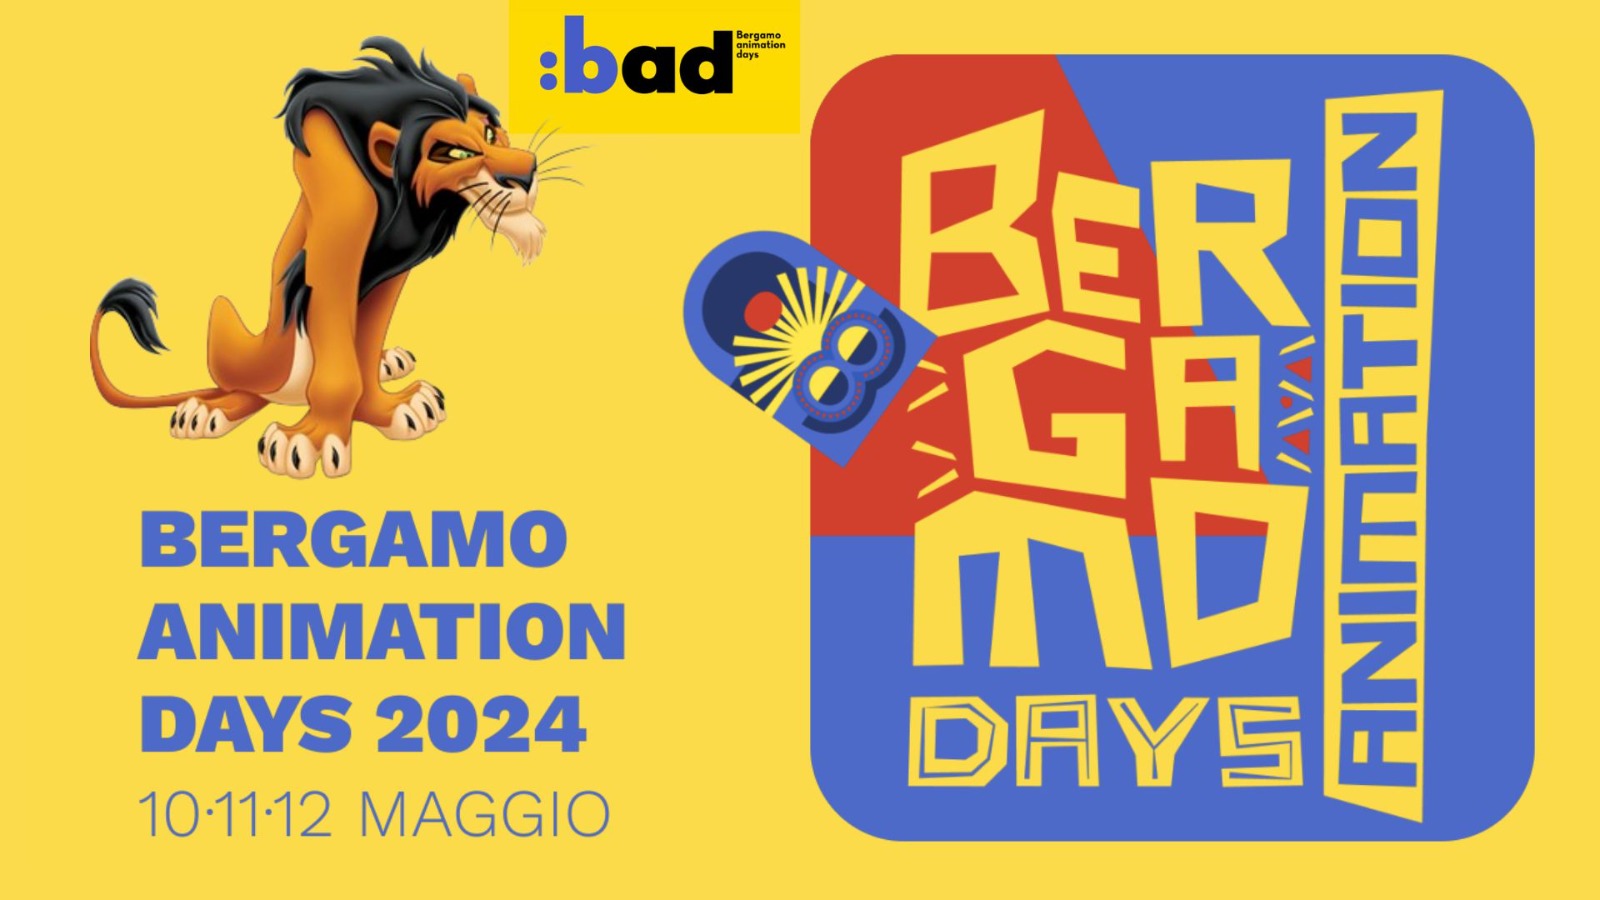 Bergamo Animation Days 2024: UniBg OnAir media partner